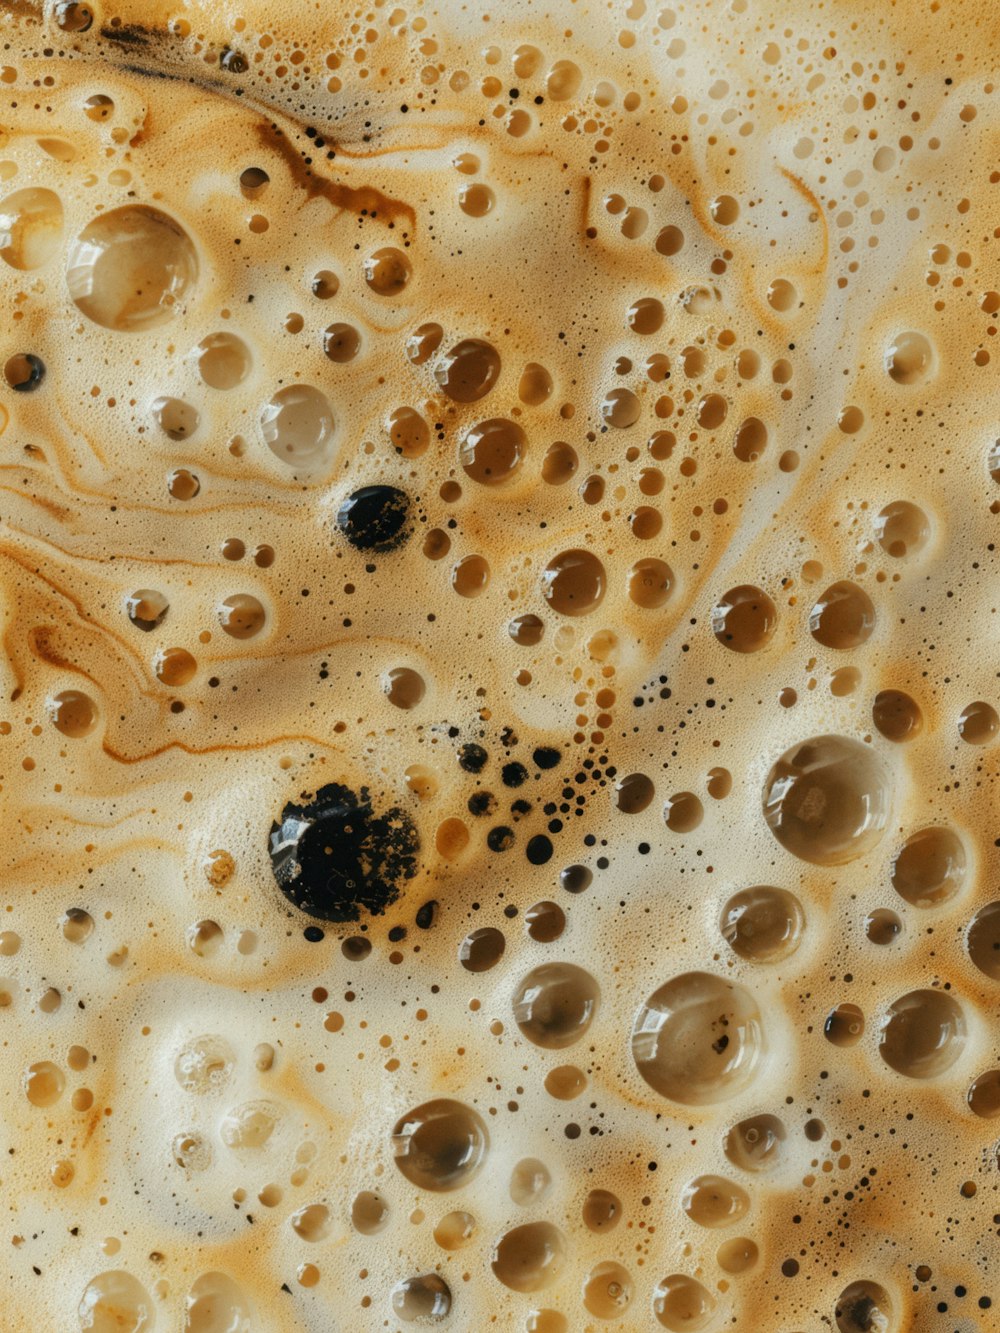 a close up of a mixture of liquid